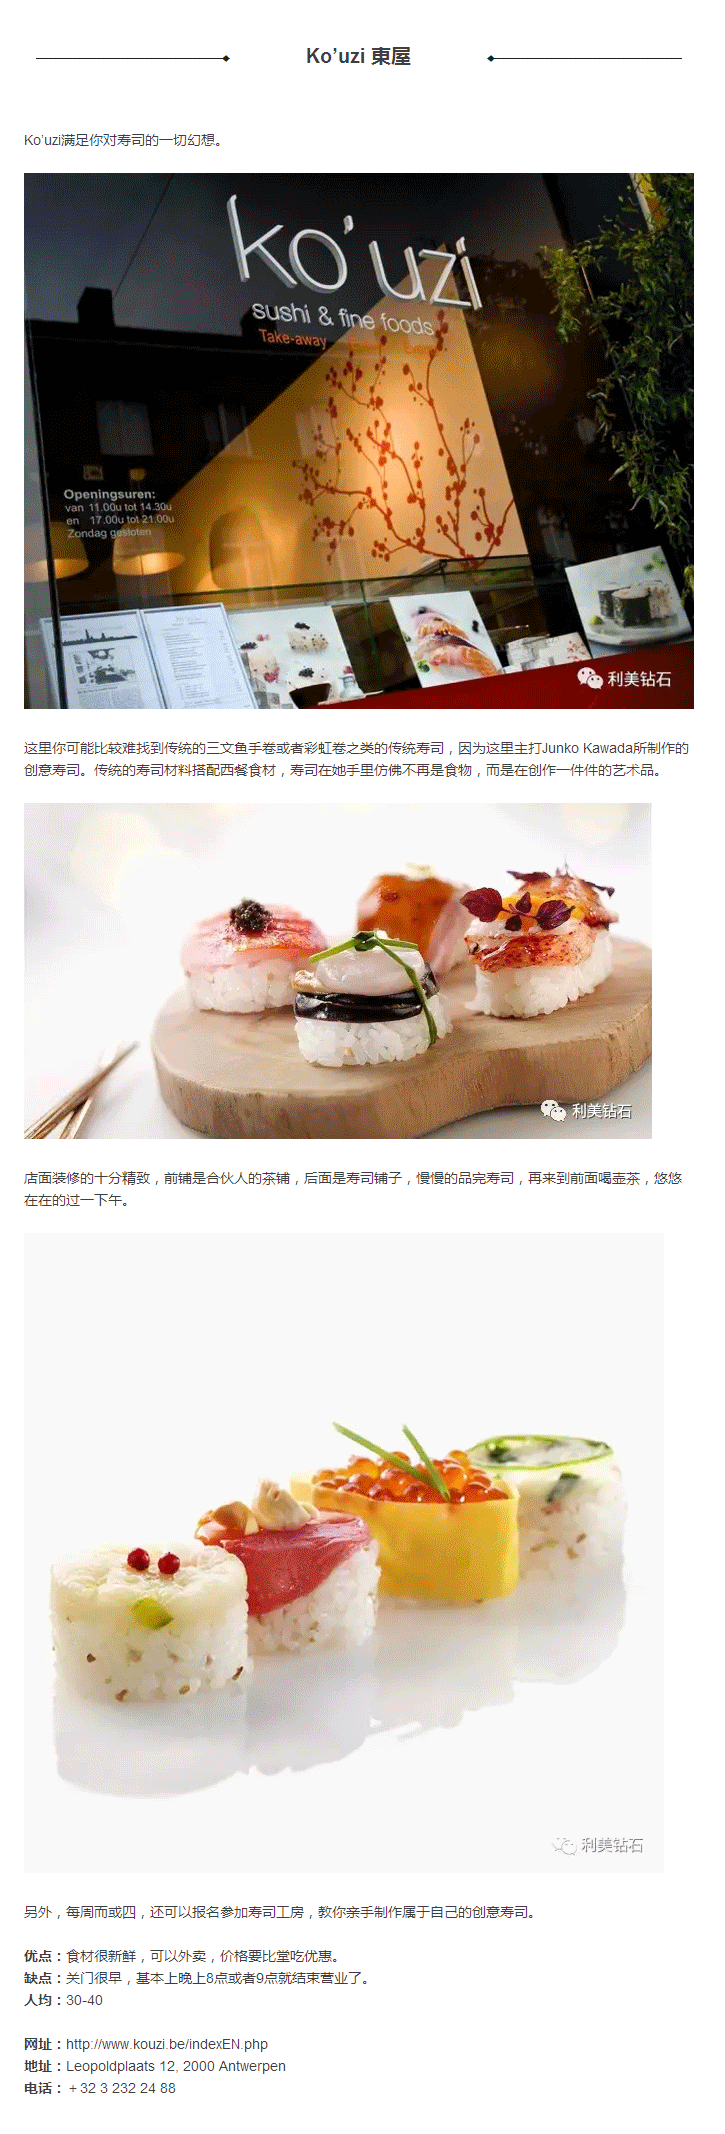 食在安特---亚洲篇之日本料理_04.gif